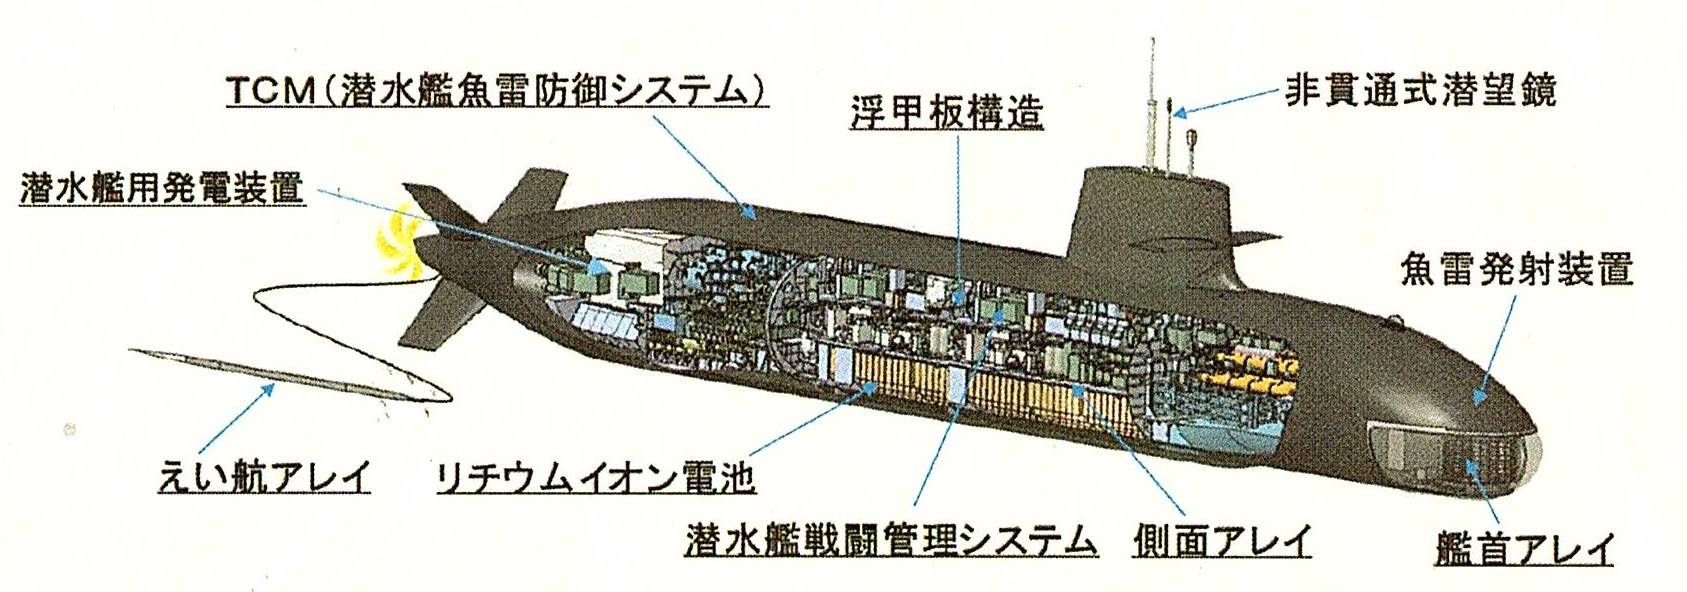 原创日本最新一代潜艇下水,吨位居世界第二,弃用039a同款aip